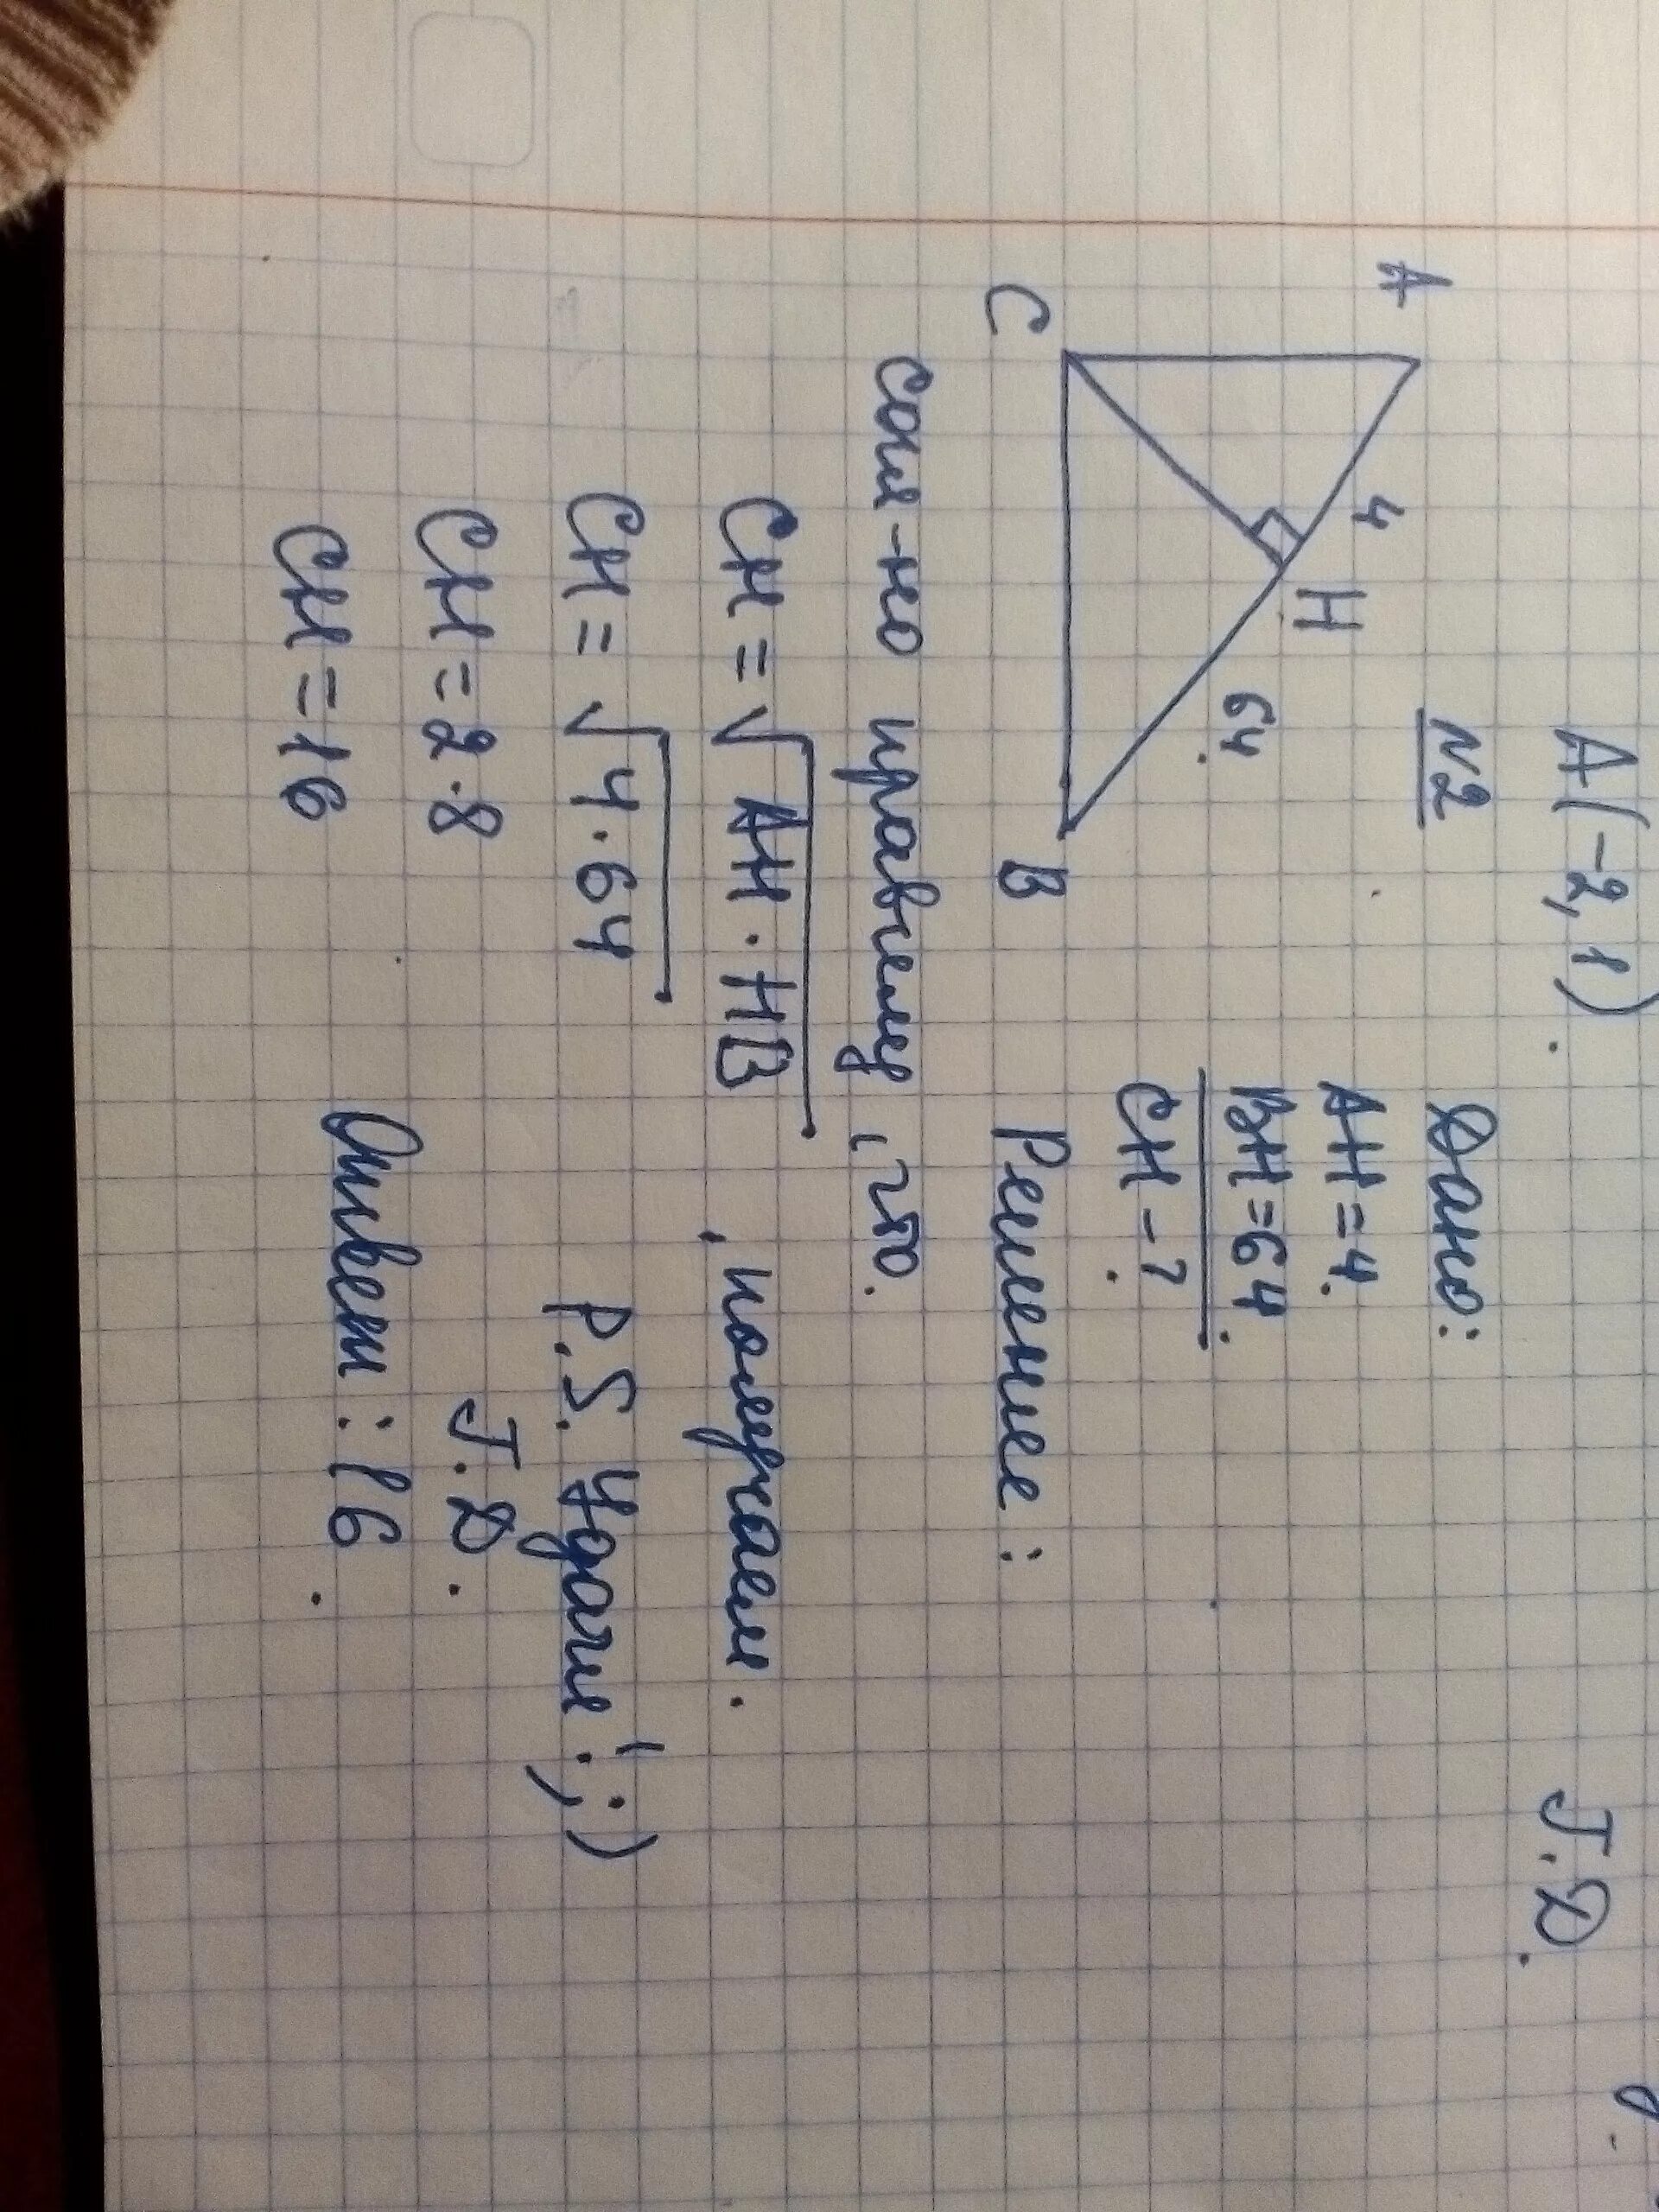 5 20 найти ch. Прямоугольный треугольник с гипотенузой ab. В прямоугольном треугольнике ABC гипотенуза ab. На гипотенузу прямоугольного треугольника опущена высота СН. На гипотенузу АВ прямоугольного треугольника АВС опущена высота.